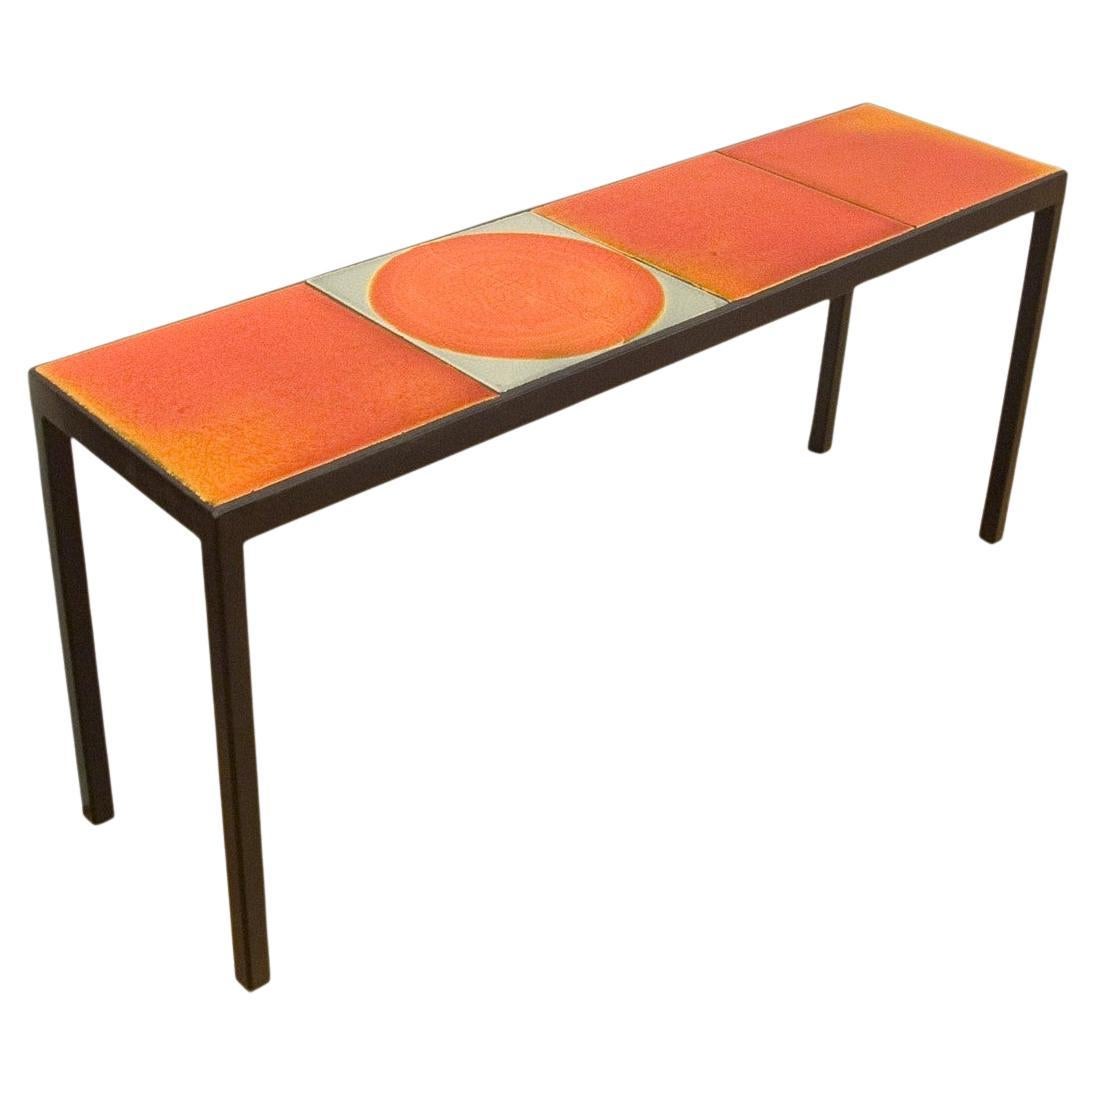 Cette table basse / console est composée de 4 carreaux de céramique fabriqués dans les années 1970 par Roger Capron, l'un des céramistes les plus connus de l'ère moderne.  Chaque carreau est unique, émaillé à la main et varié en couleur et en